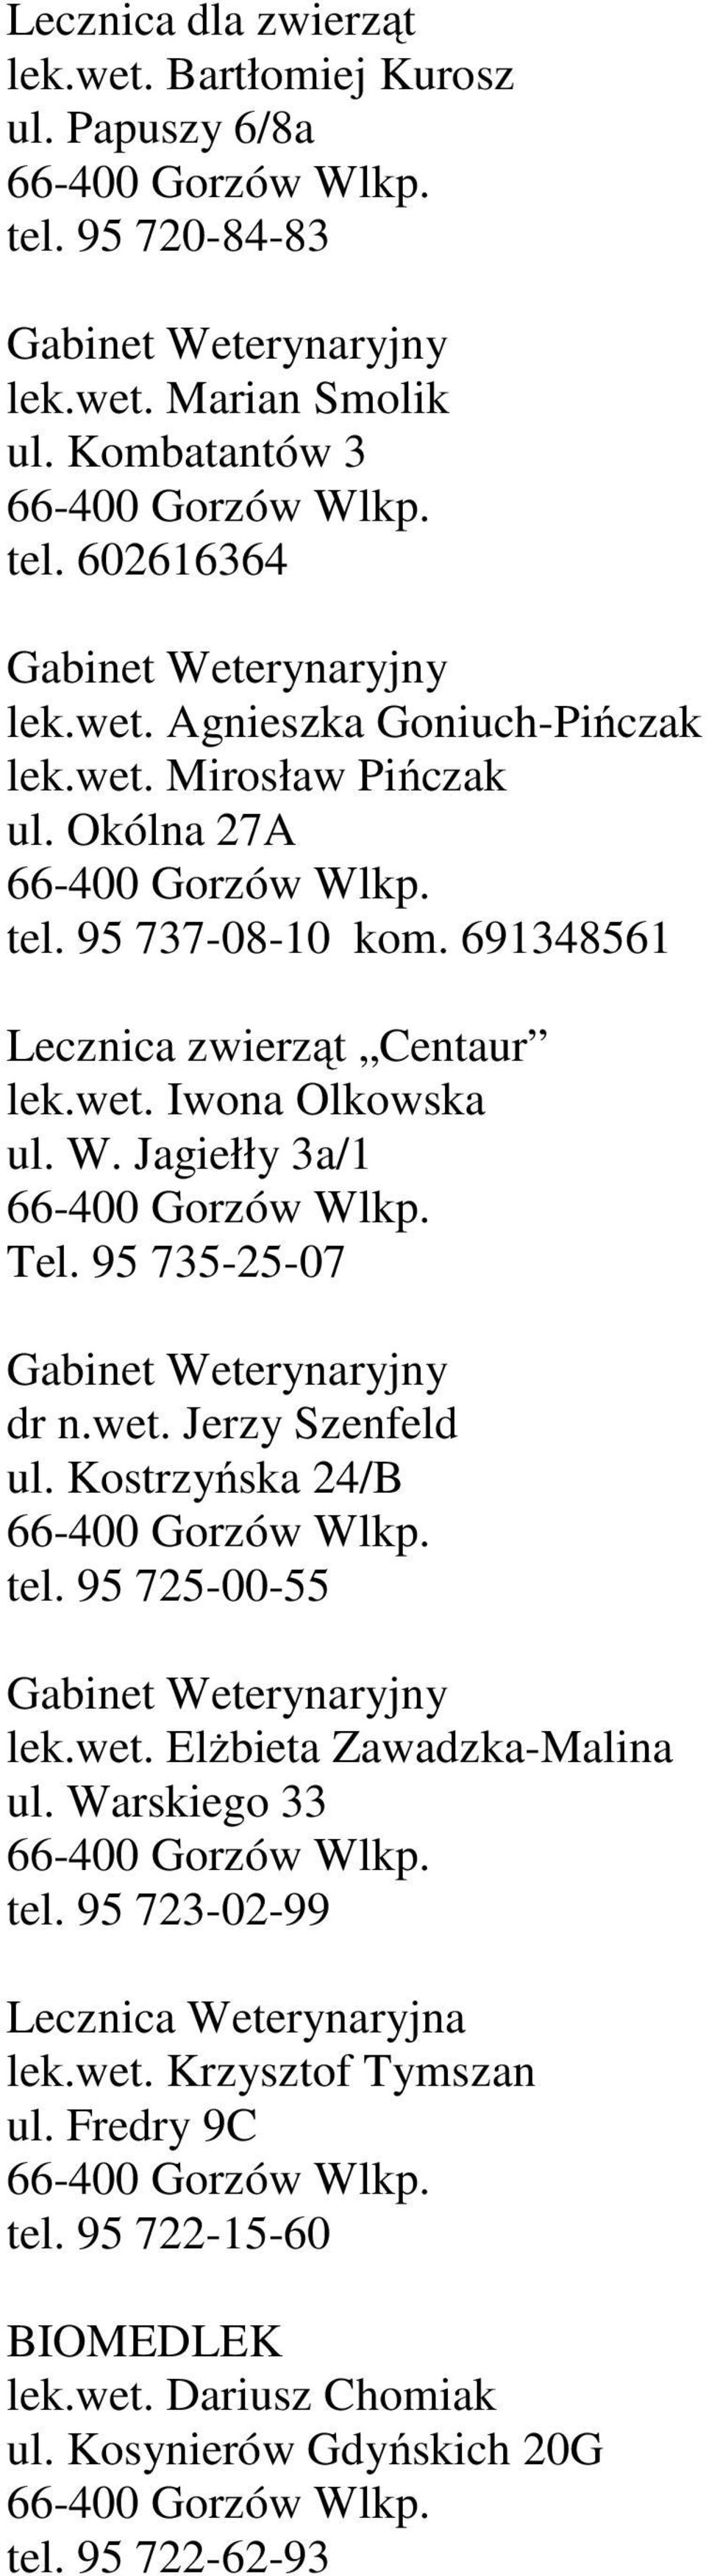 95 735-25-07 dr n.wet. Jerzy Szenfeld ul. Kostrzyńska 24/B tel. 95 725-00-55 lek.wet. Elżbieta Zawadzka-Malina ul. Warskiego 33 tel.